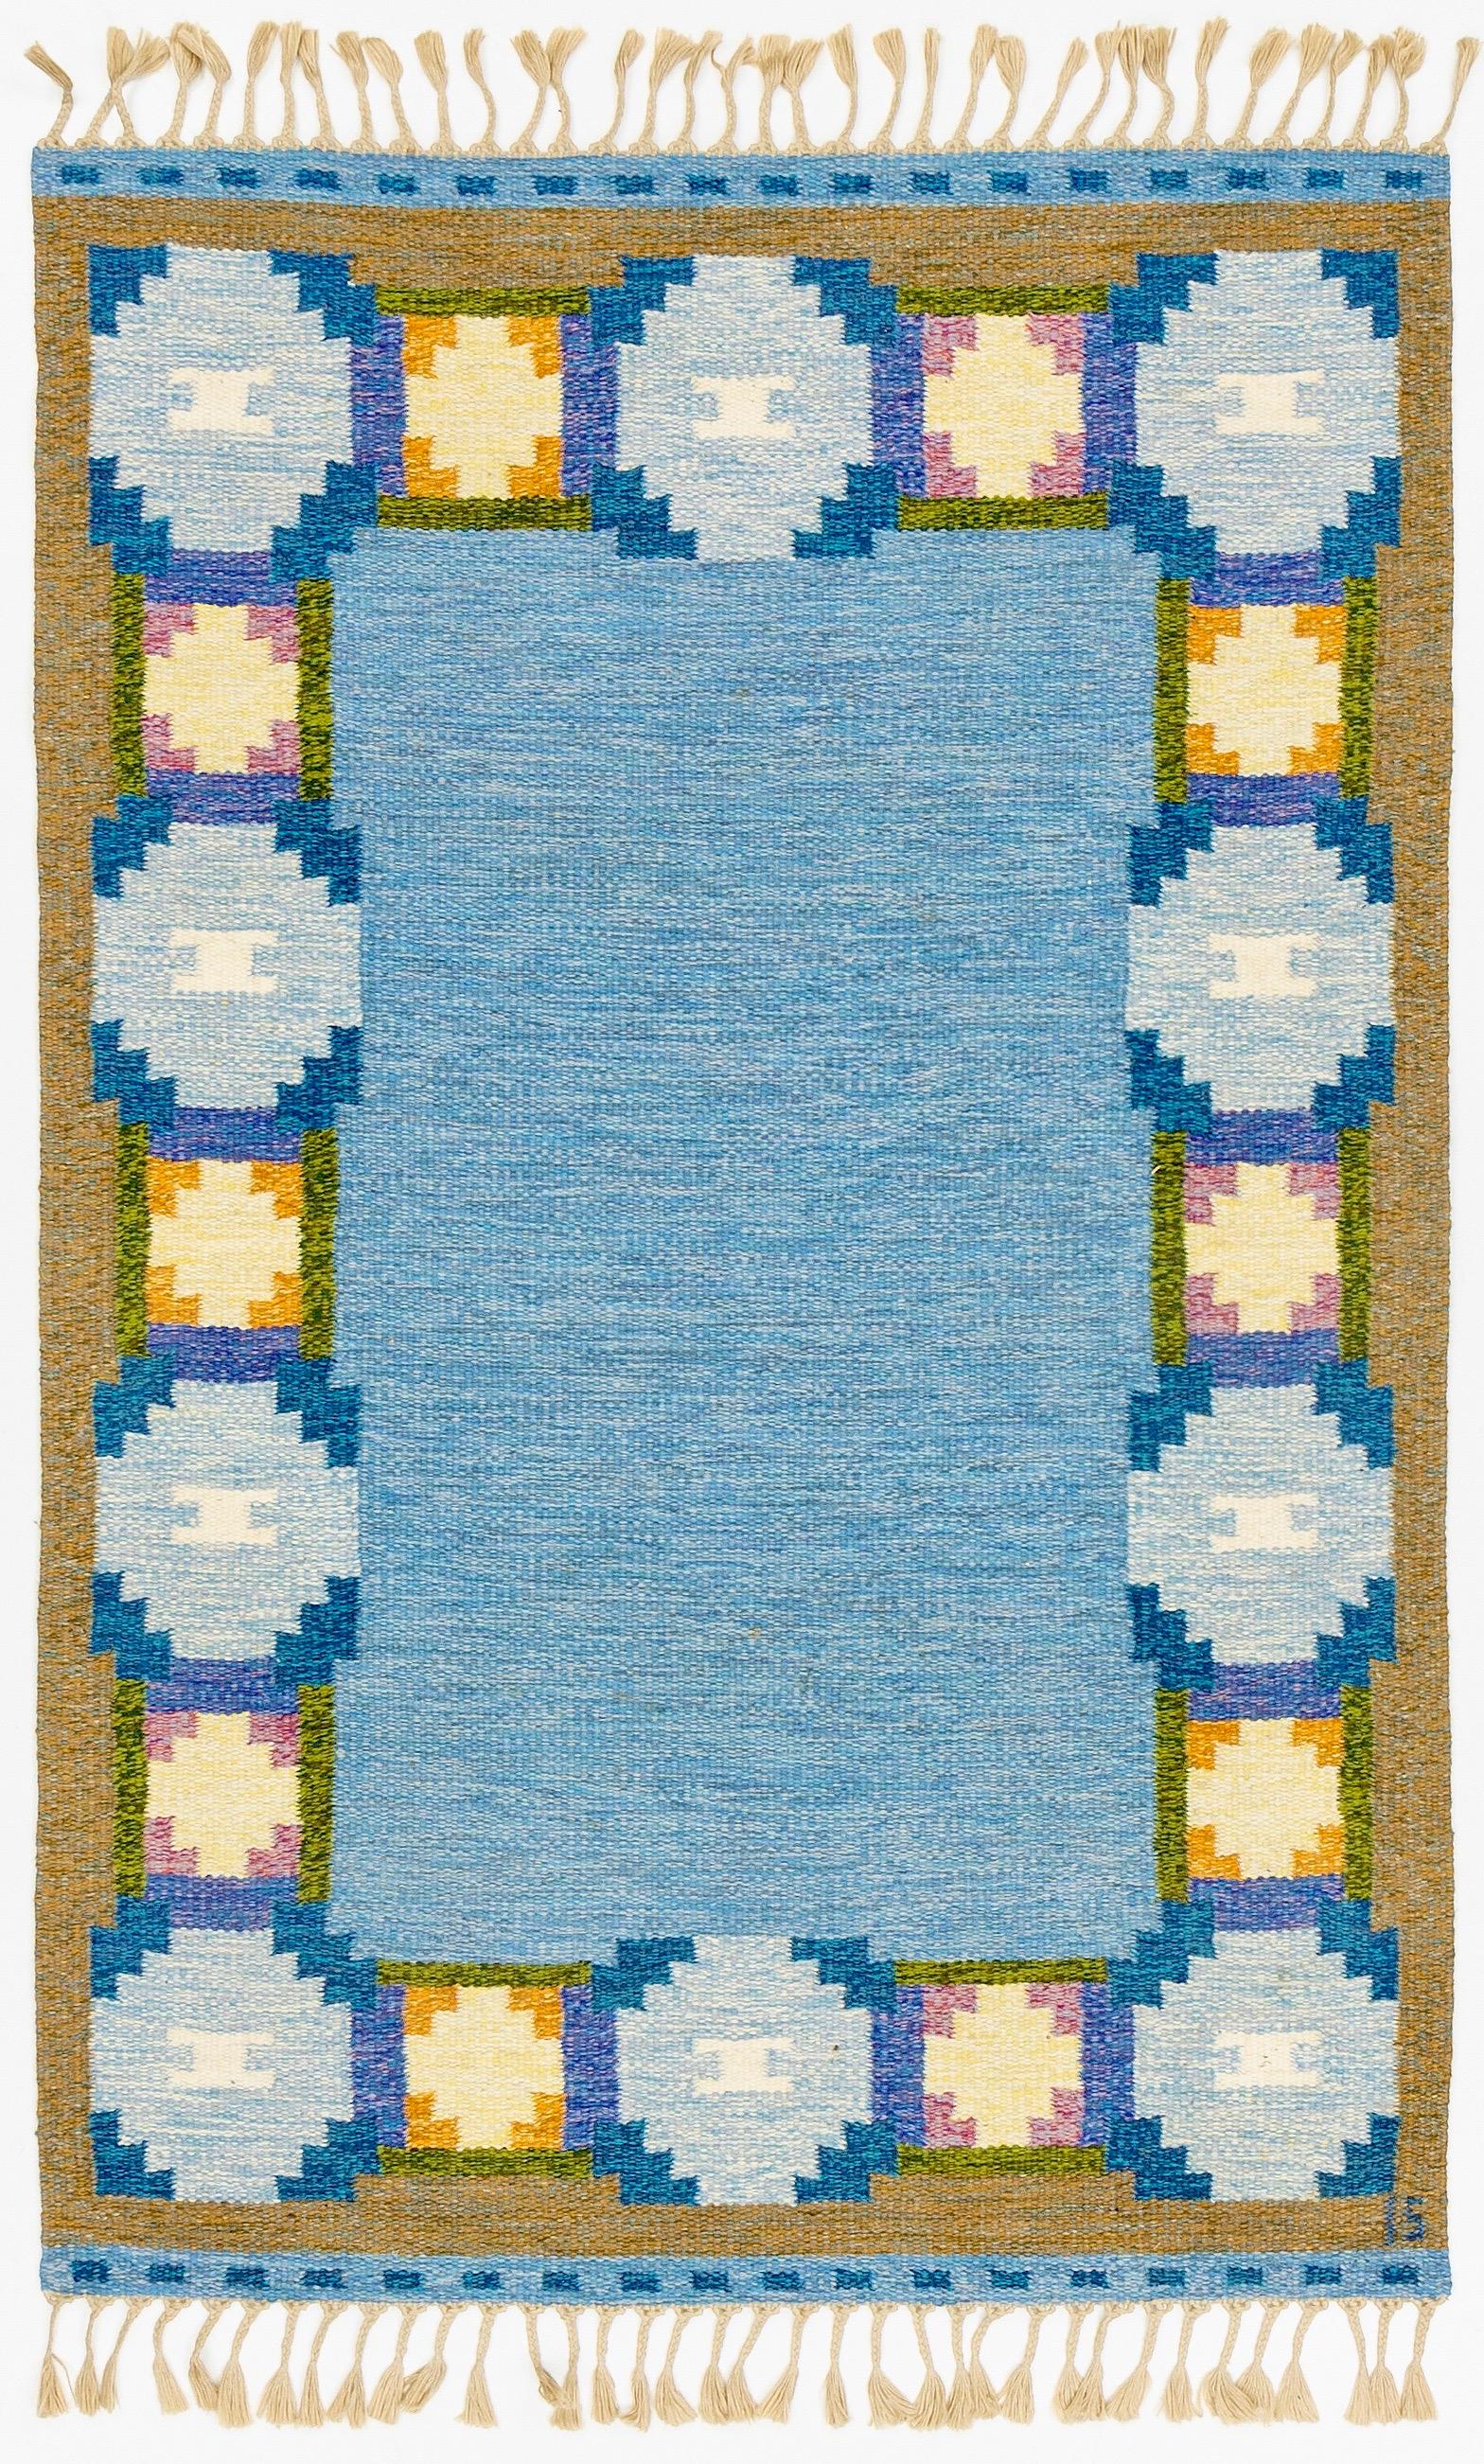 Ingegerd Silow (1916-2005) war eine der produktivsten und einflussreichsten schwedischen Teppichdesignerinnen in der Mitte des Jahrhunderts. 
Sie gehörte zur zweiten Generation der schwedischen Textildesigner des zwanzigsten Jahrhunderts. Wie auch